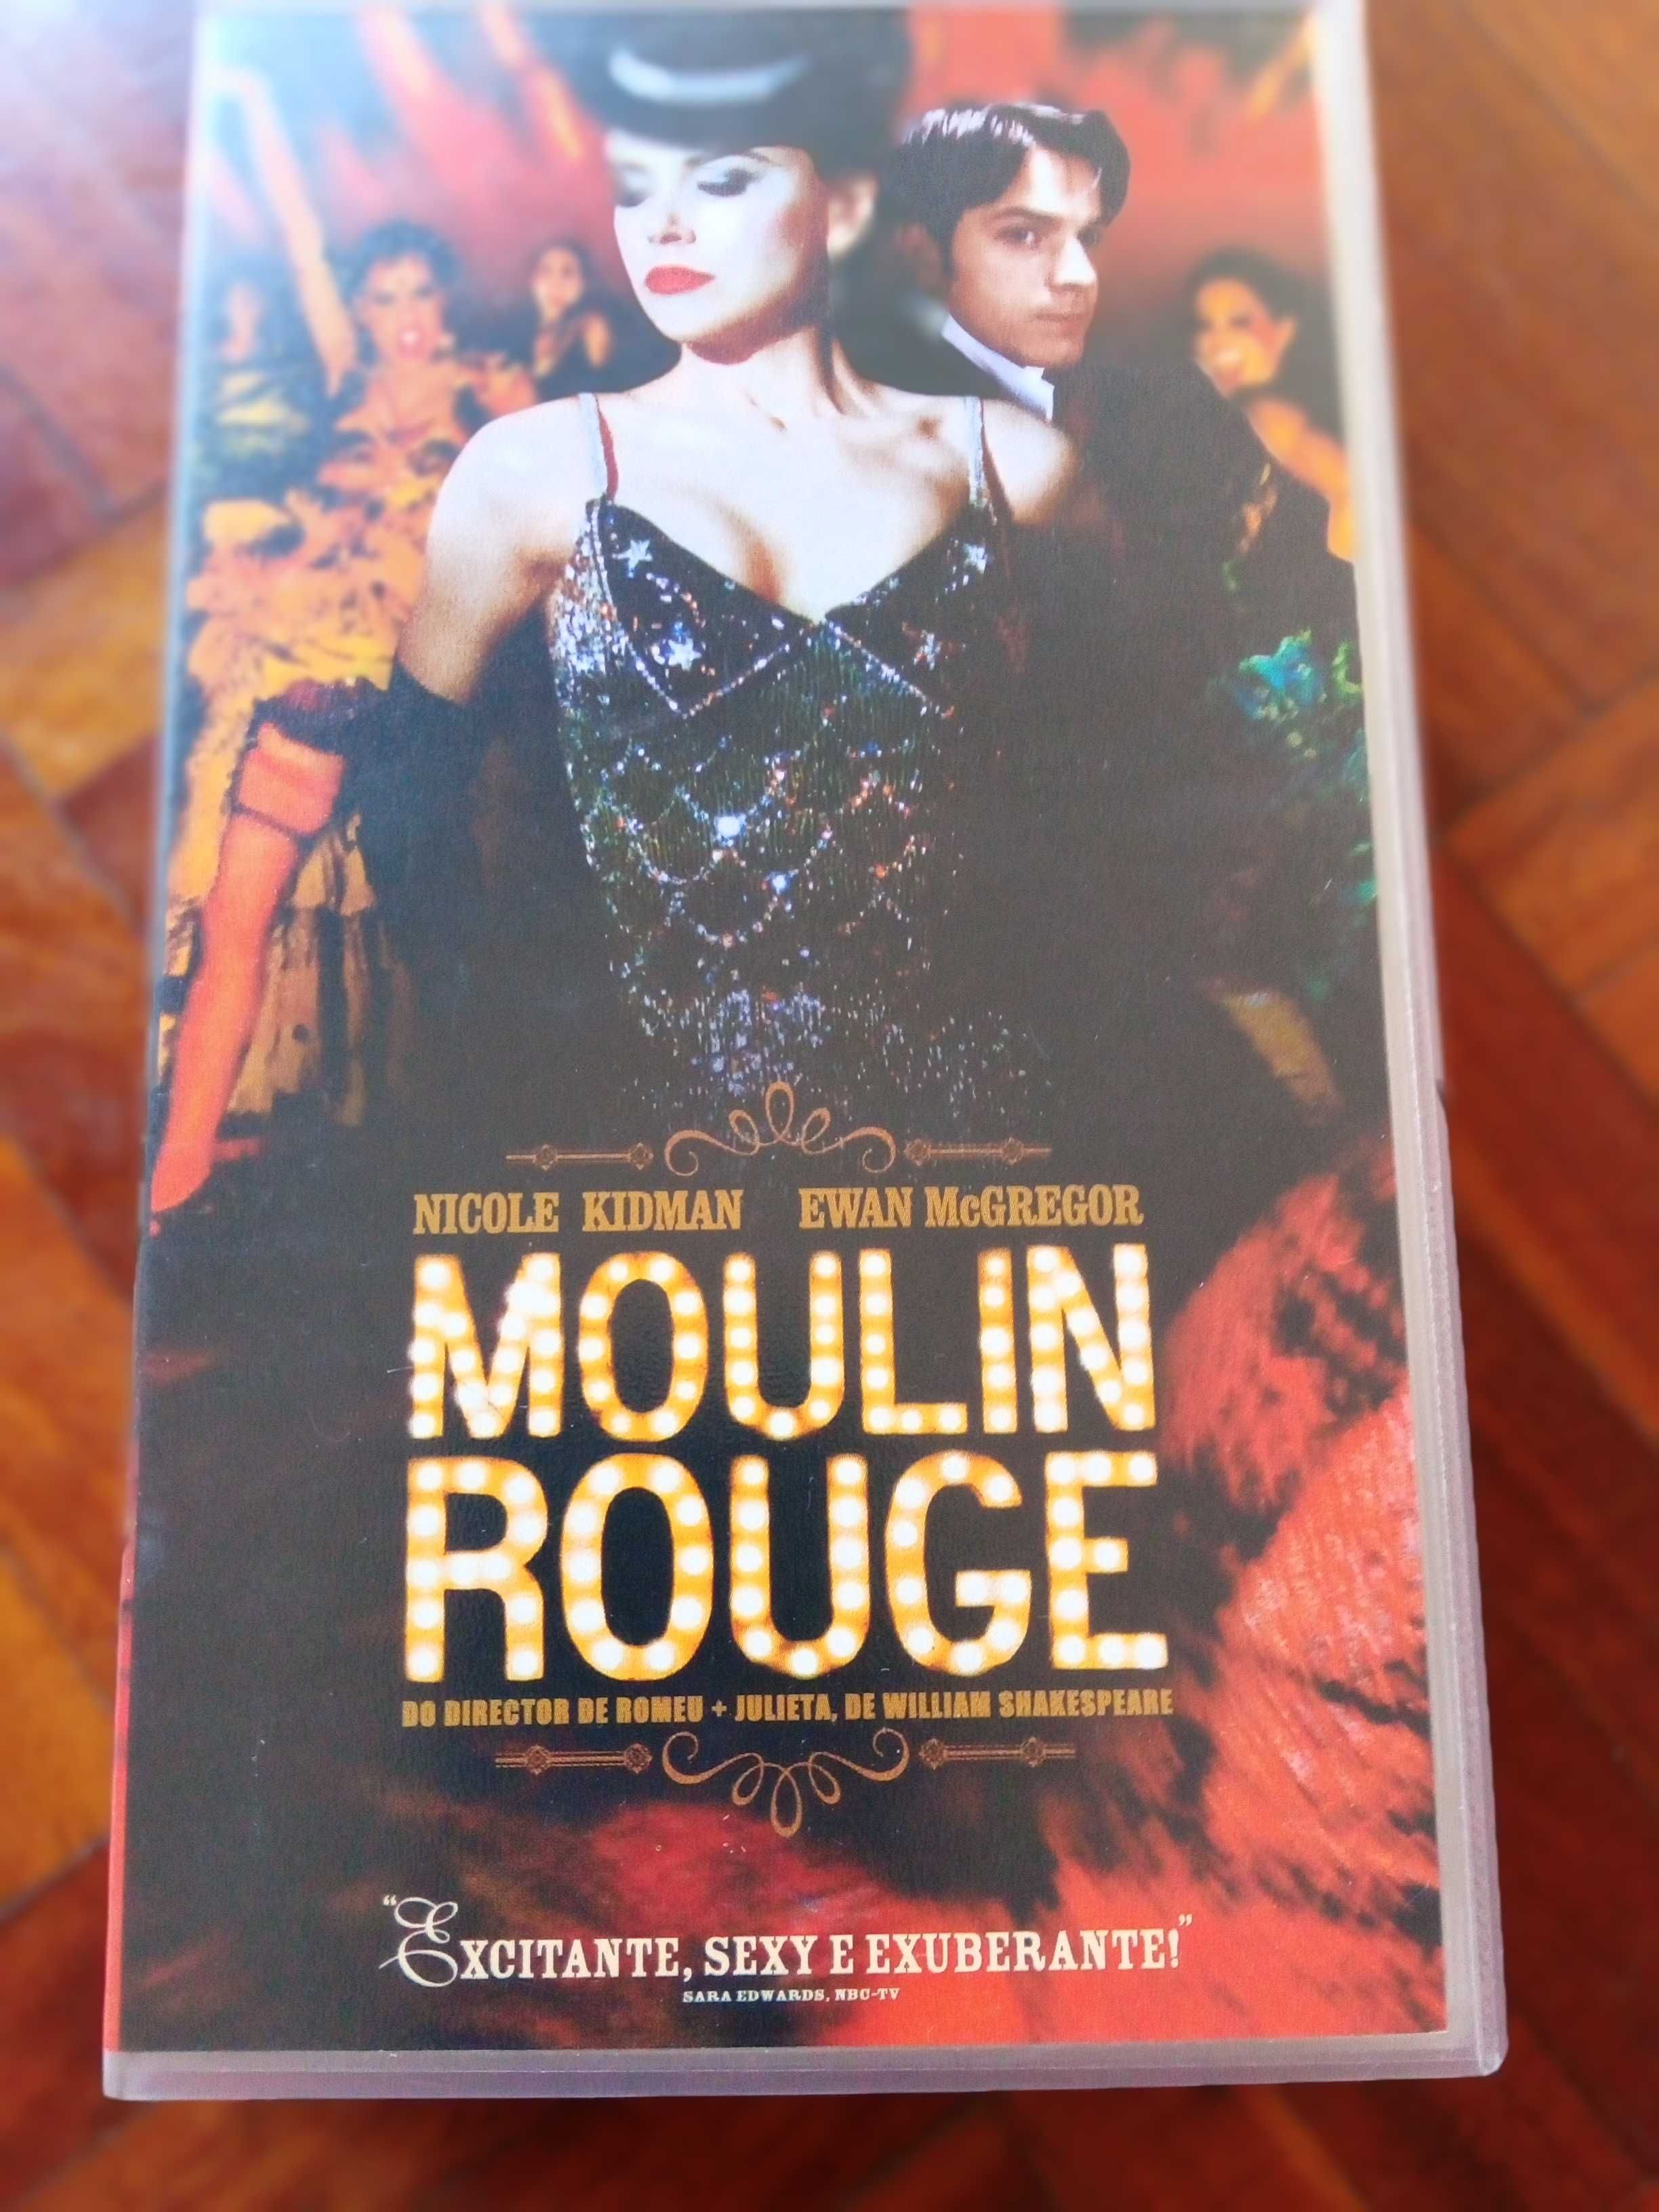 Filme em VHS Moulin Rouge.